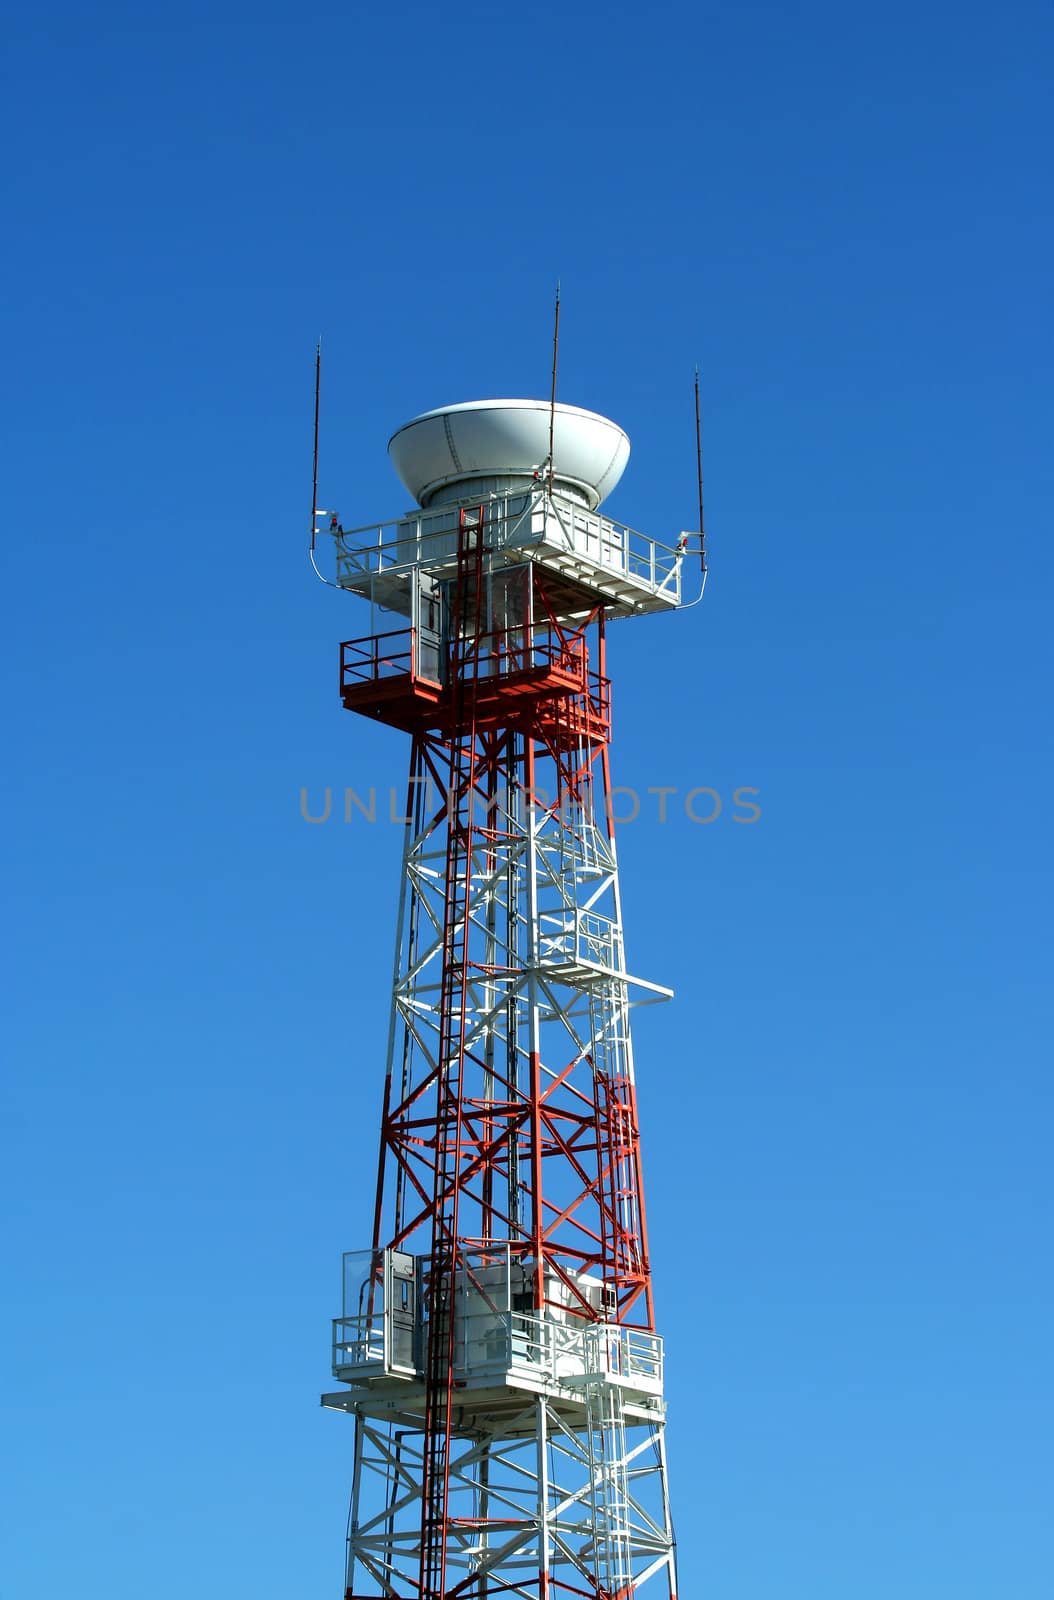 Airport radar tower by njnightsky